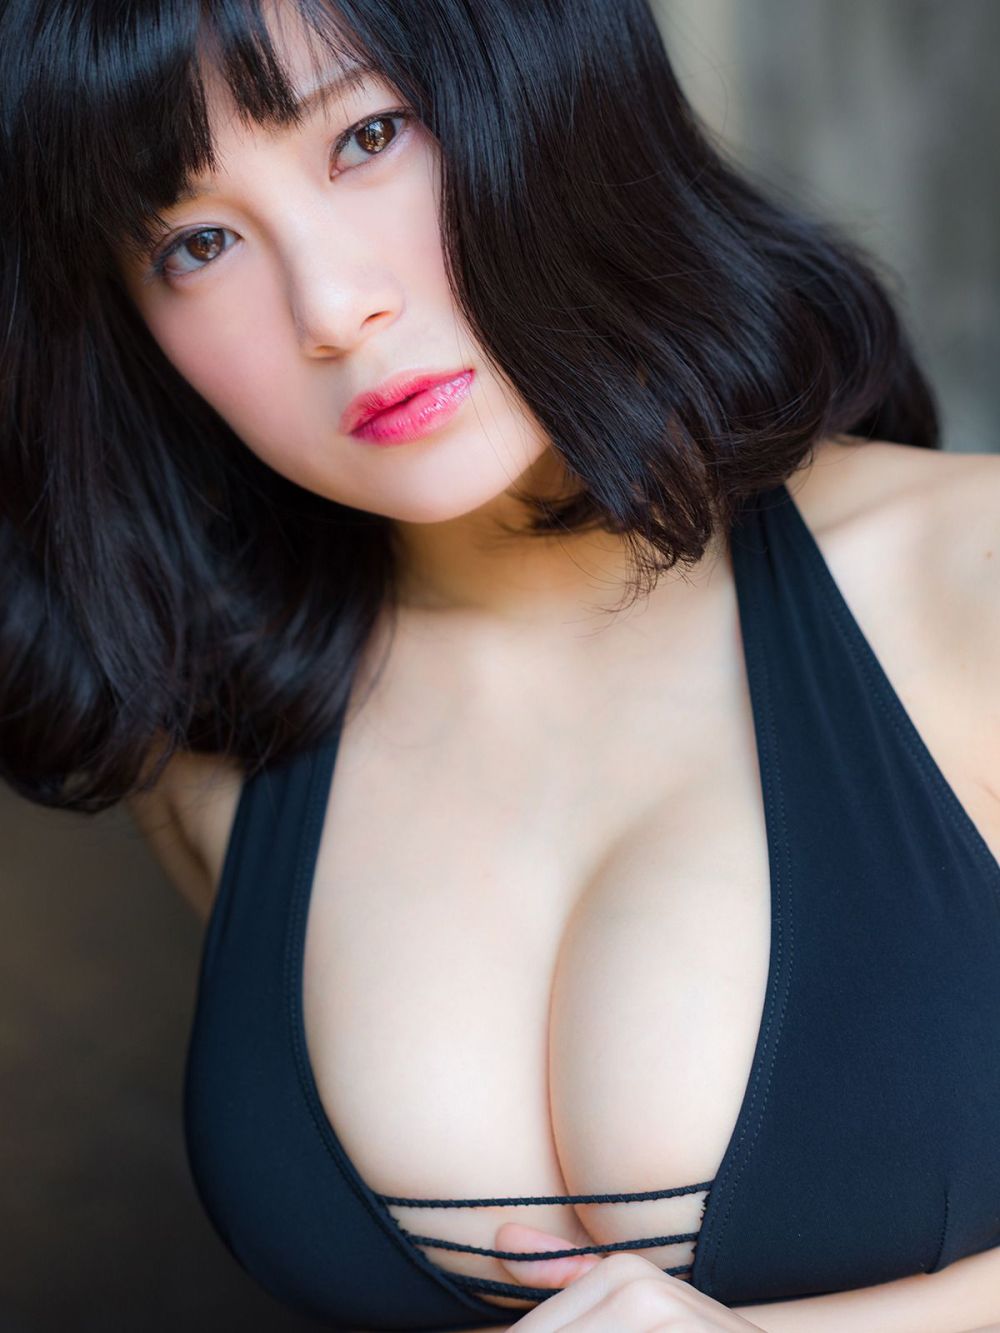 兰梦 Sexy and Hottest Photos , Latest Pics